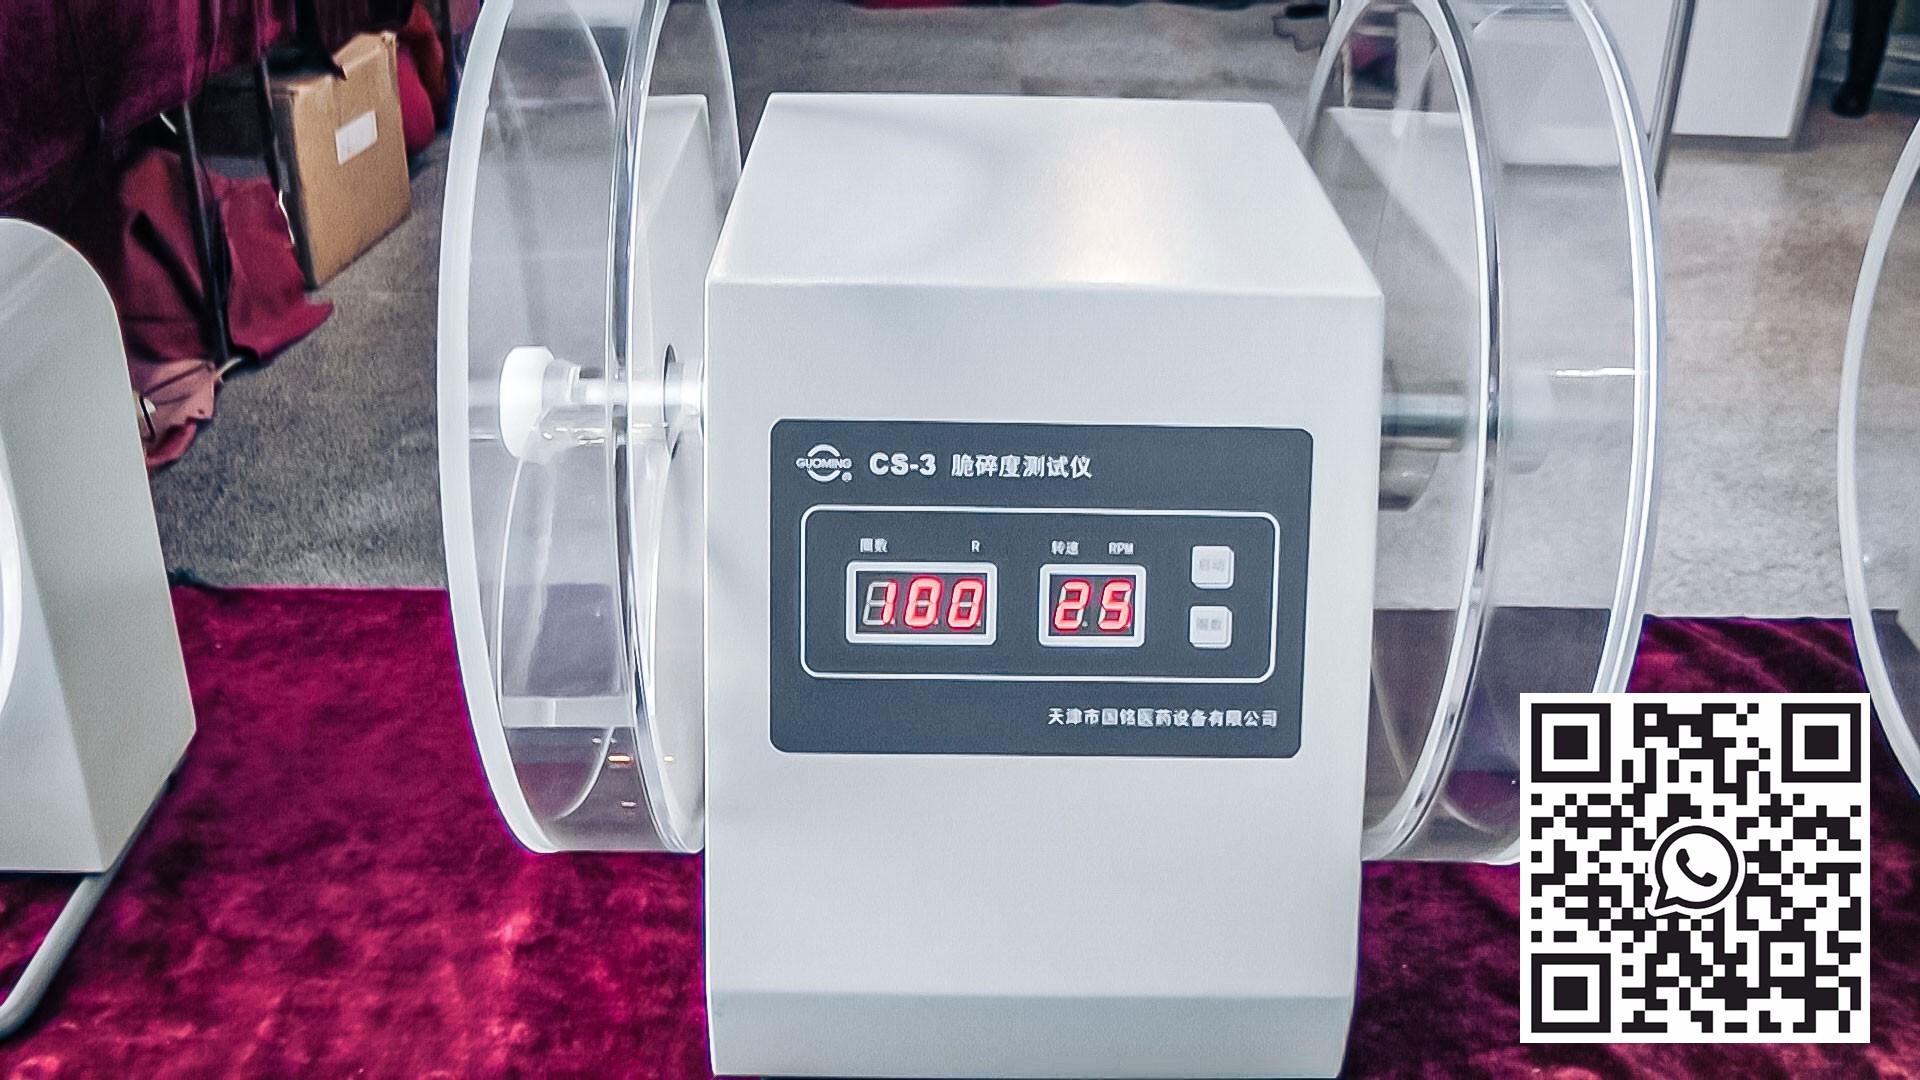 알제리 의약품 생산에서 정제 및 캡슐의 마모율을 테스트하기위한 자동 장비